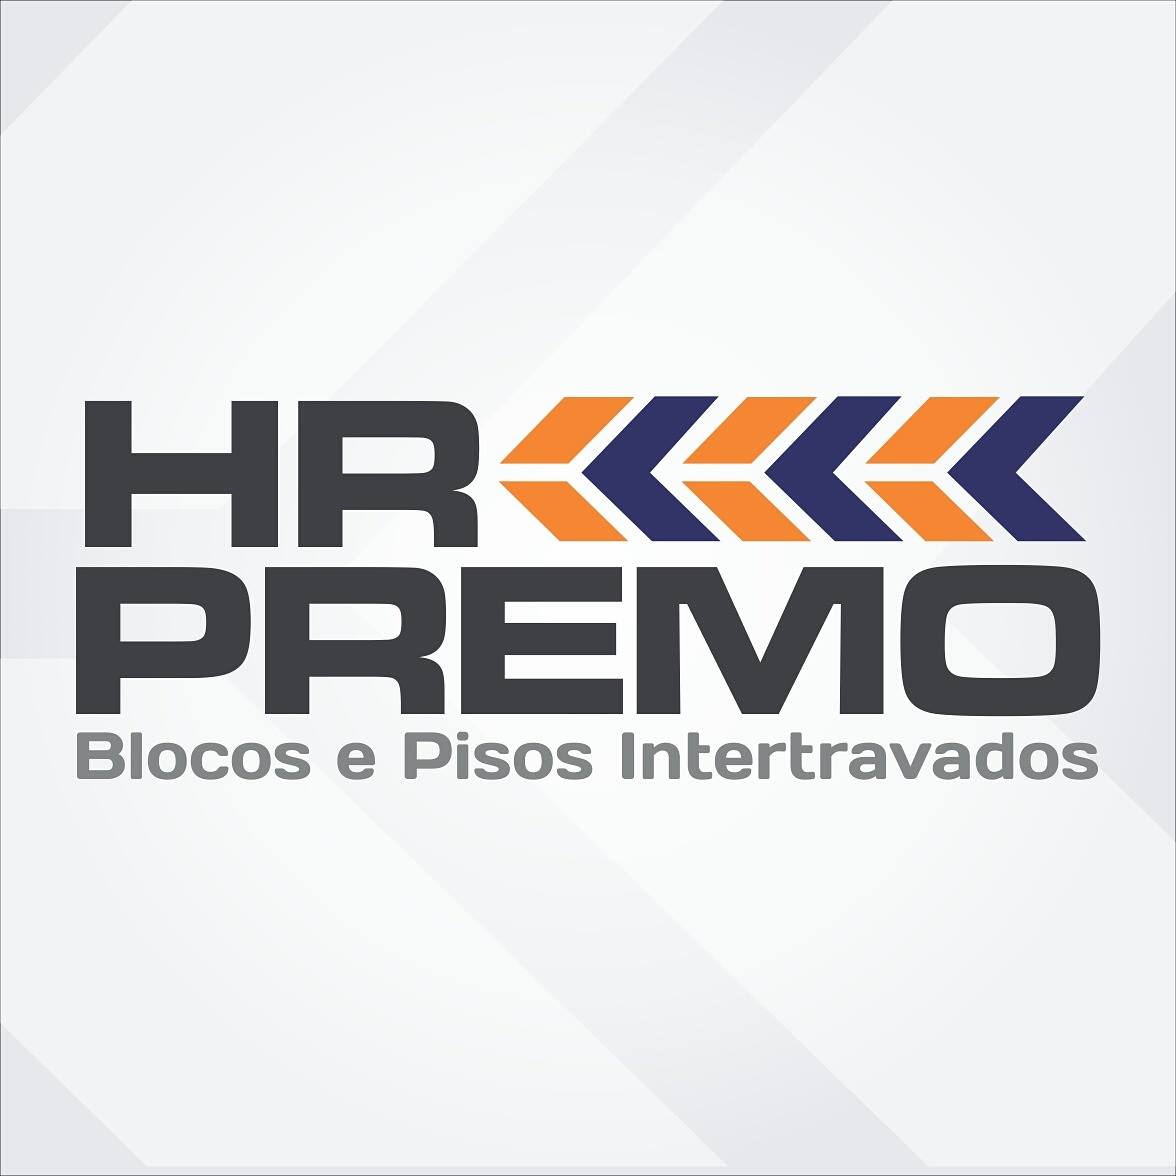 HR PREMO - BLOCOS E PISOS INTERTRAVADOS - Juiz de Fora, MG